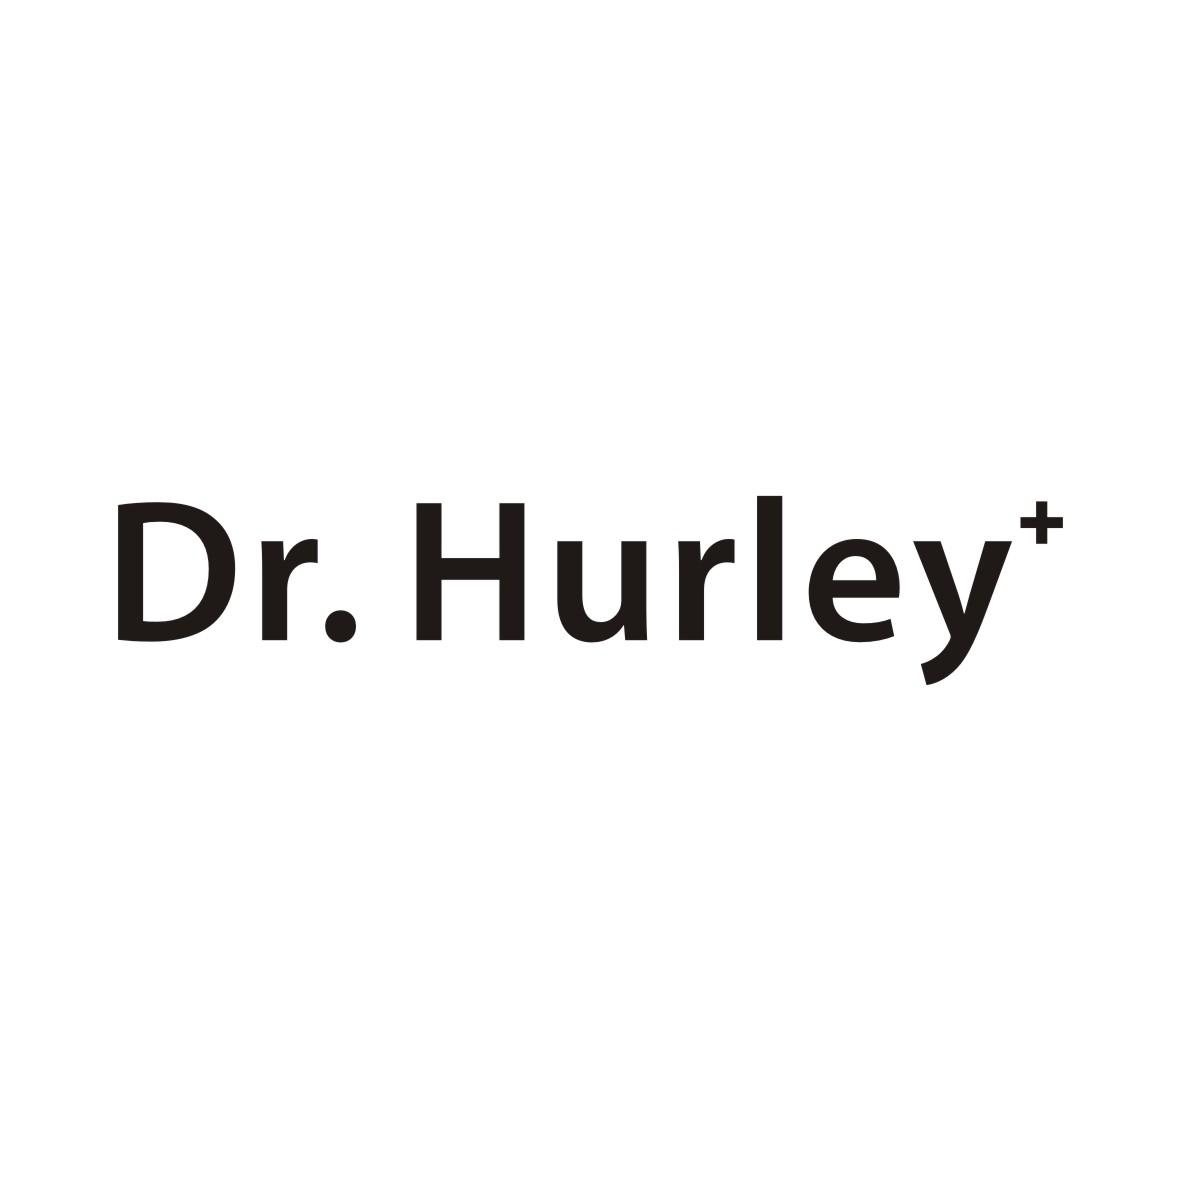 35类-广告销售DR. HURLEY+商标转让